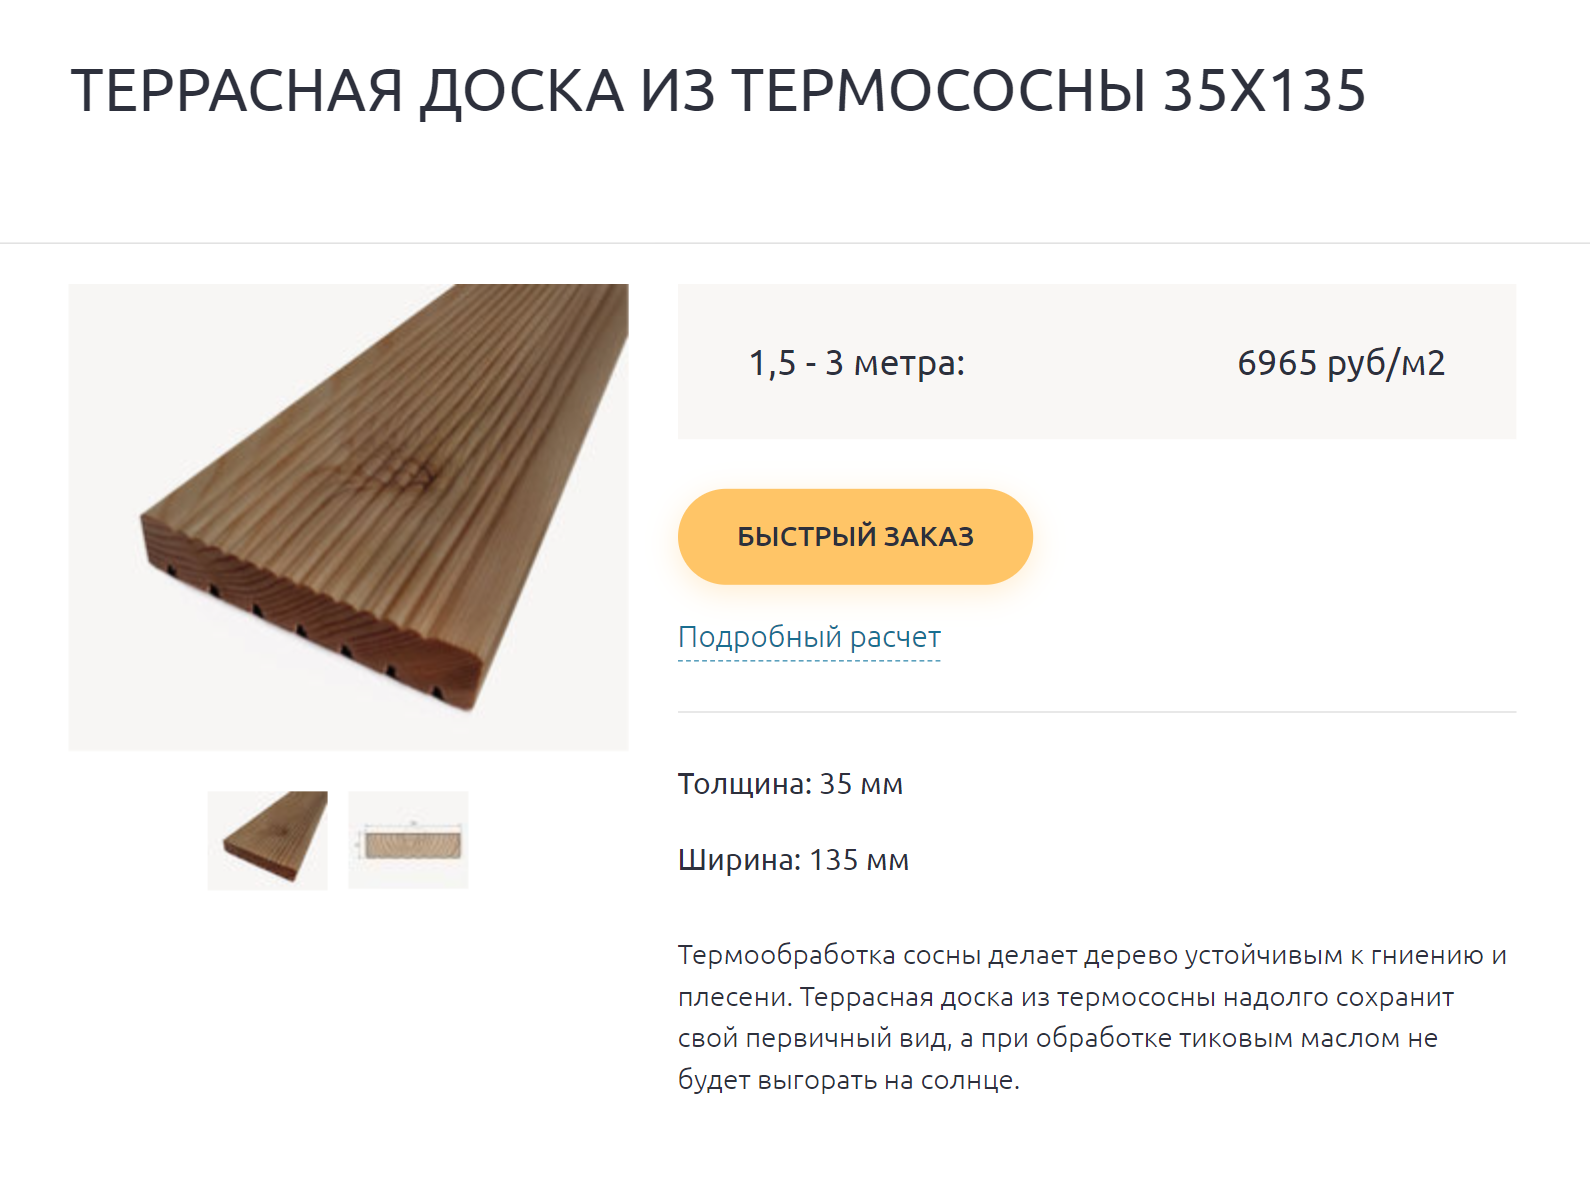 Единственный минус термодревесины — цена. Причем нужно обращать внимание, что длина доски может быть разной, а цена указана за 1 м². Источник: kindforest.ru